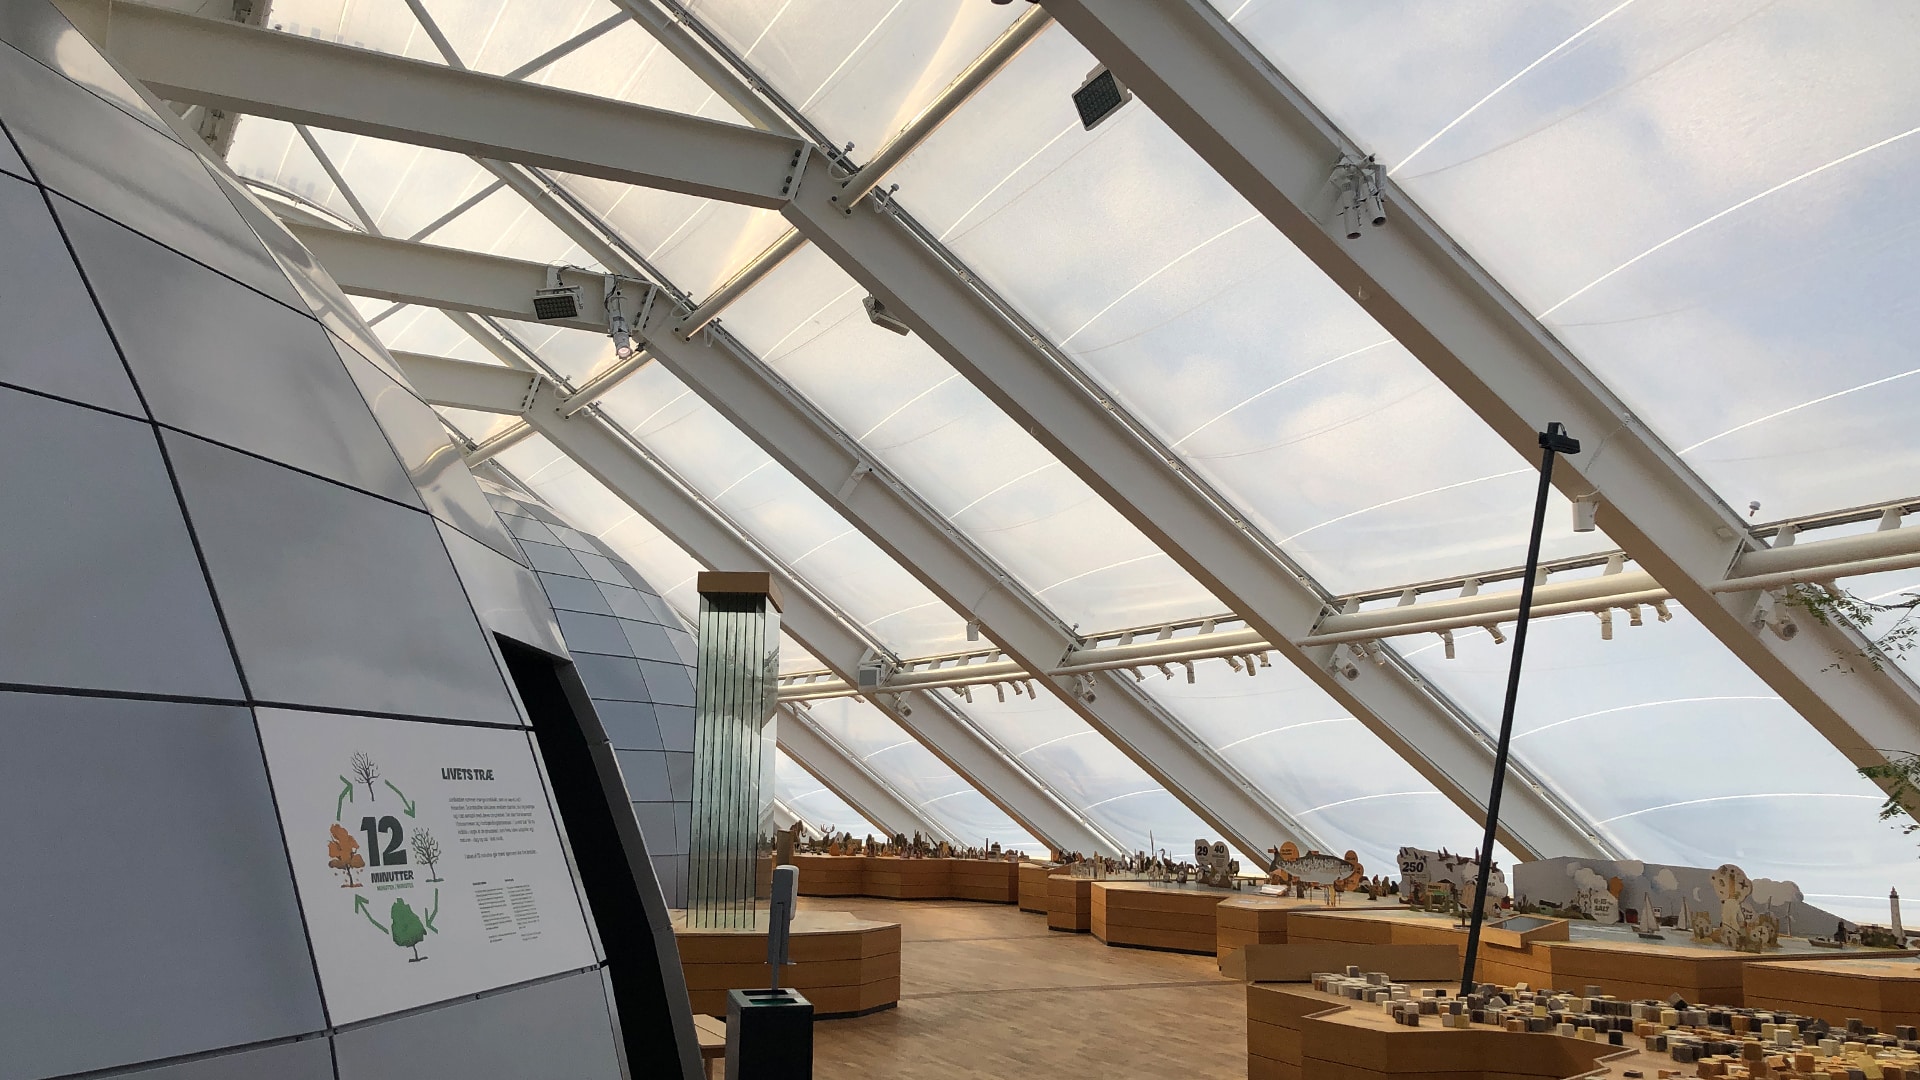 Dänischer Themenpark Naturkraft schafft eine unvergessliche Lernumgebung für alle Besucher - mit Hilfe unserer Texlon® ETFE Gebäudehülle.